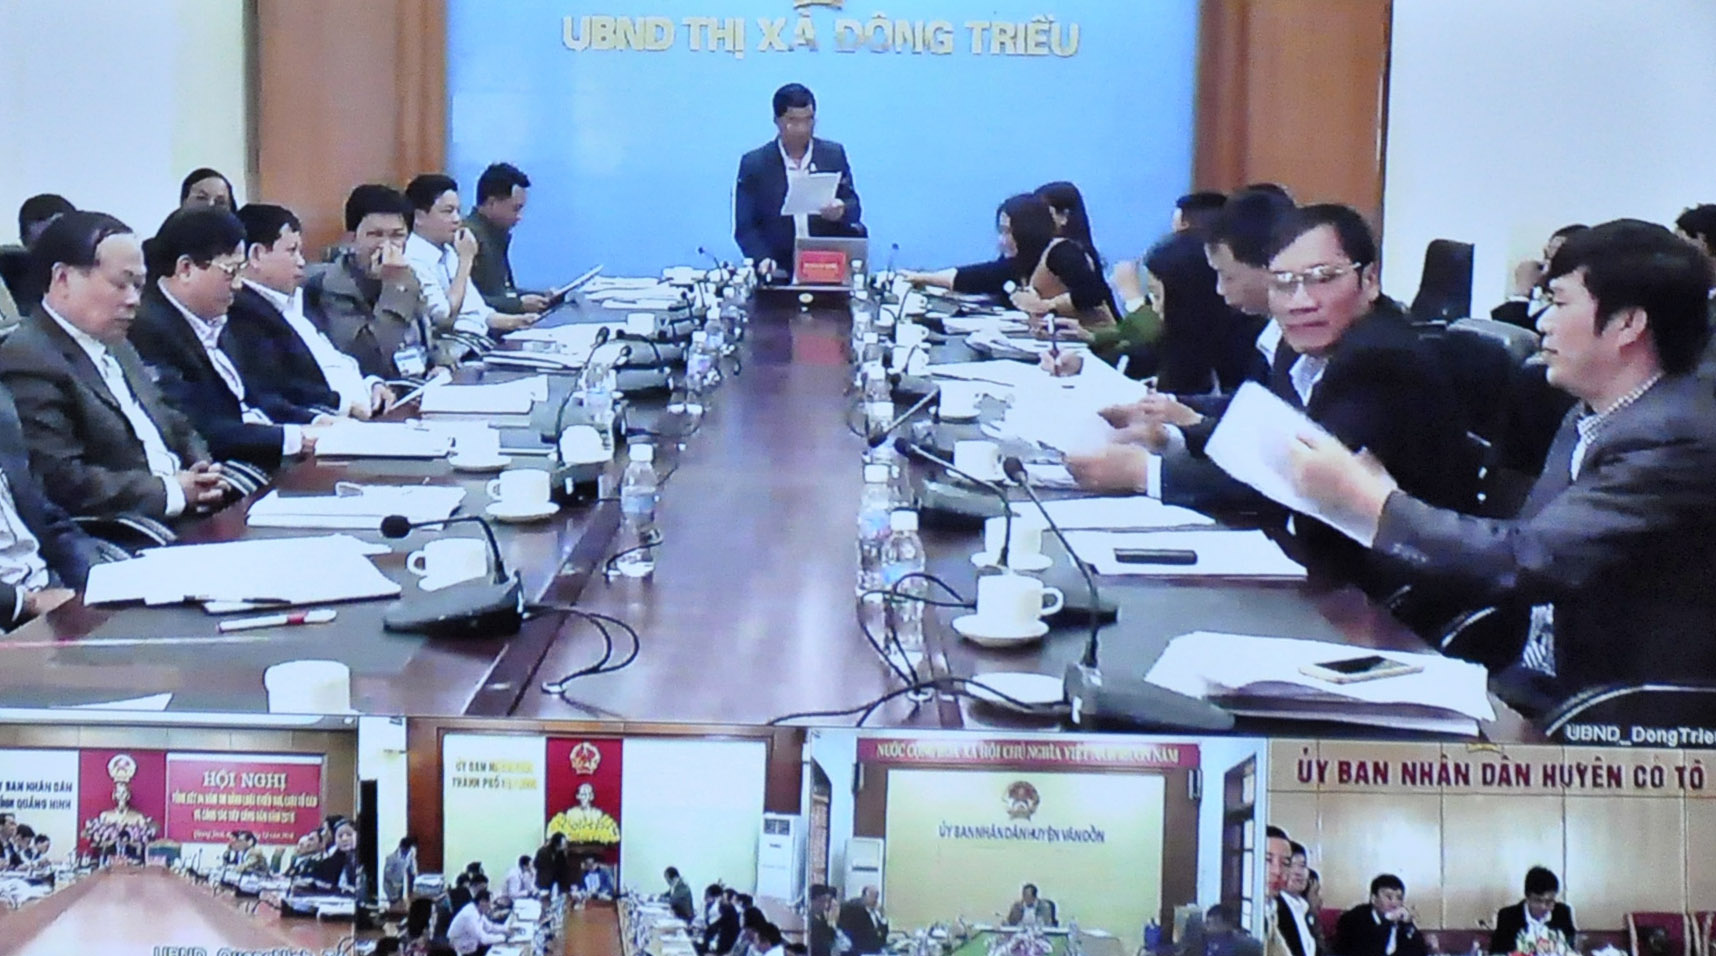 Lãnh đạo UBND TX Đông Triều chia sẻ kinh nghiệm giải quyết KNTC trên địa bàn.